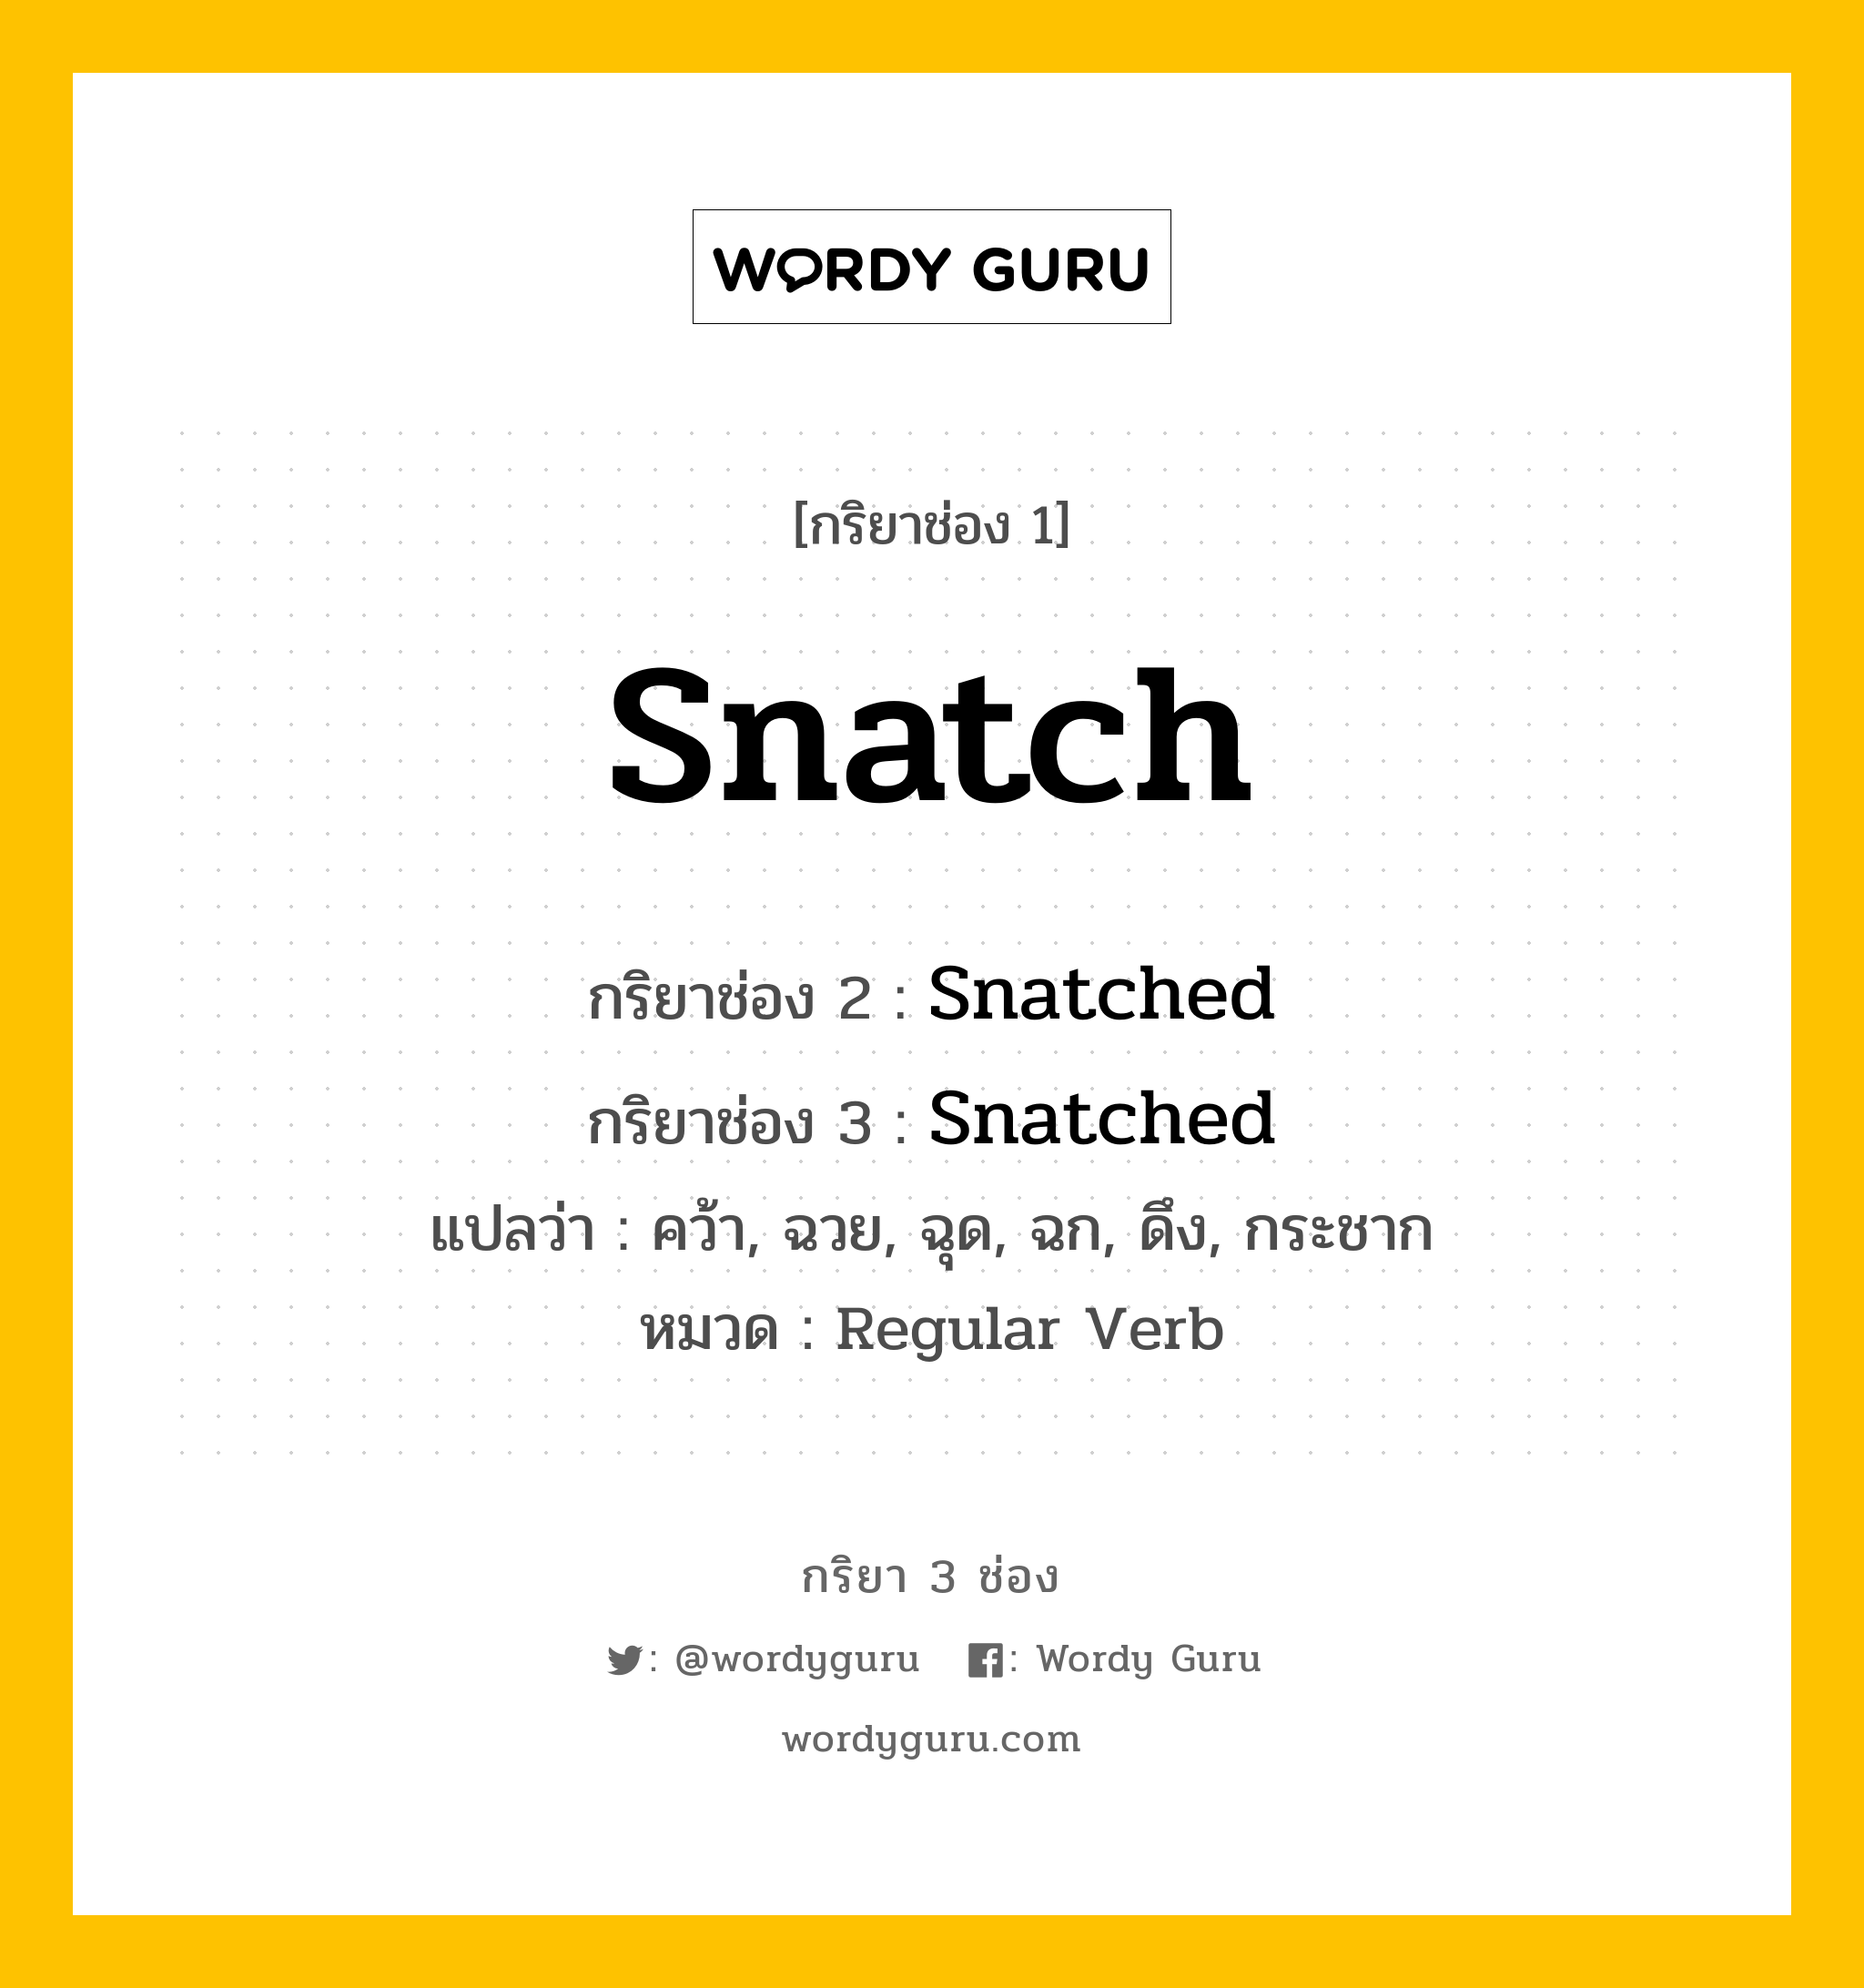 กริยา 3 ช่อง: Snatch ช่อง 2 Snatch ช่อง 3 คืออะไร, กริยาช่อง 1 Snatch กริยาช่อง 2 Snatched กริยาช่อง 3 Snatched แปลว่า คว้า, ฉวย, ฉุด, ฉก, ดึง, กระชาก หมวด Regular Verb หมวด Regular Verb